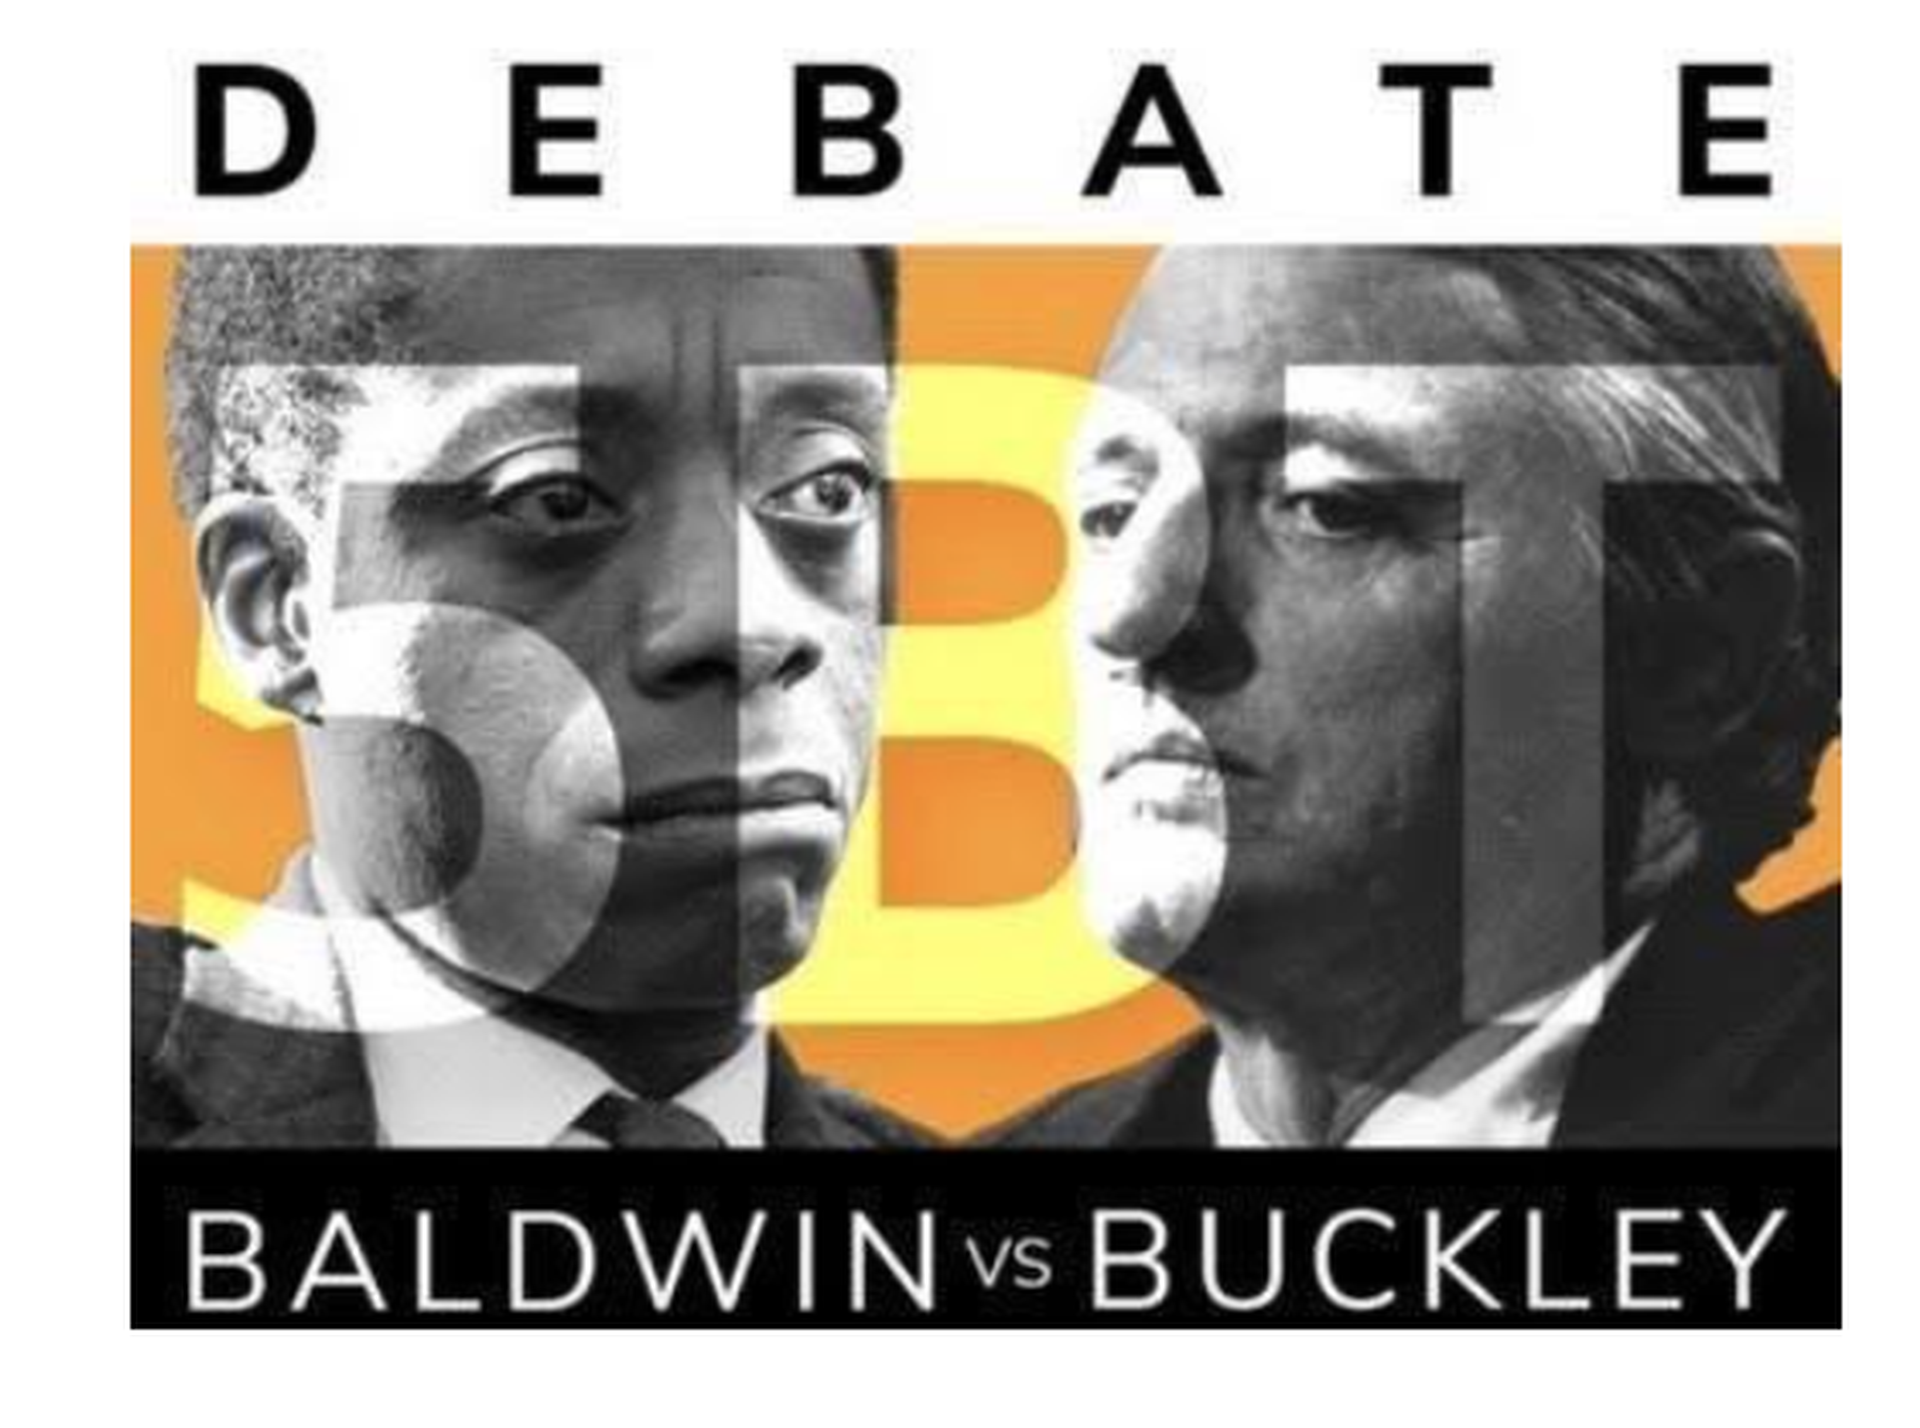 DEBATE: BALDWIN VS BUCKLEY